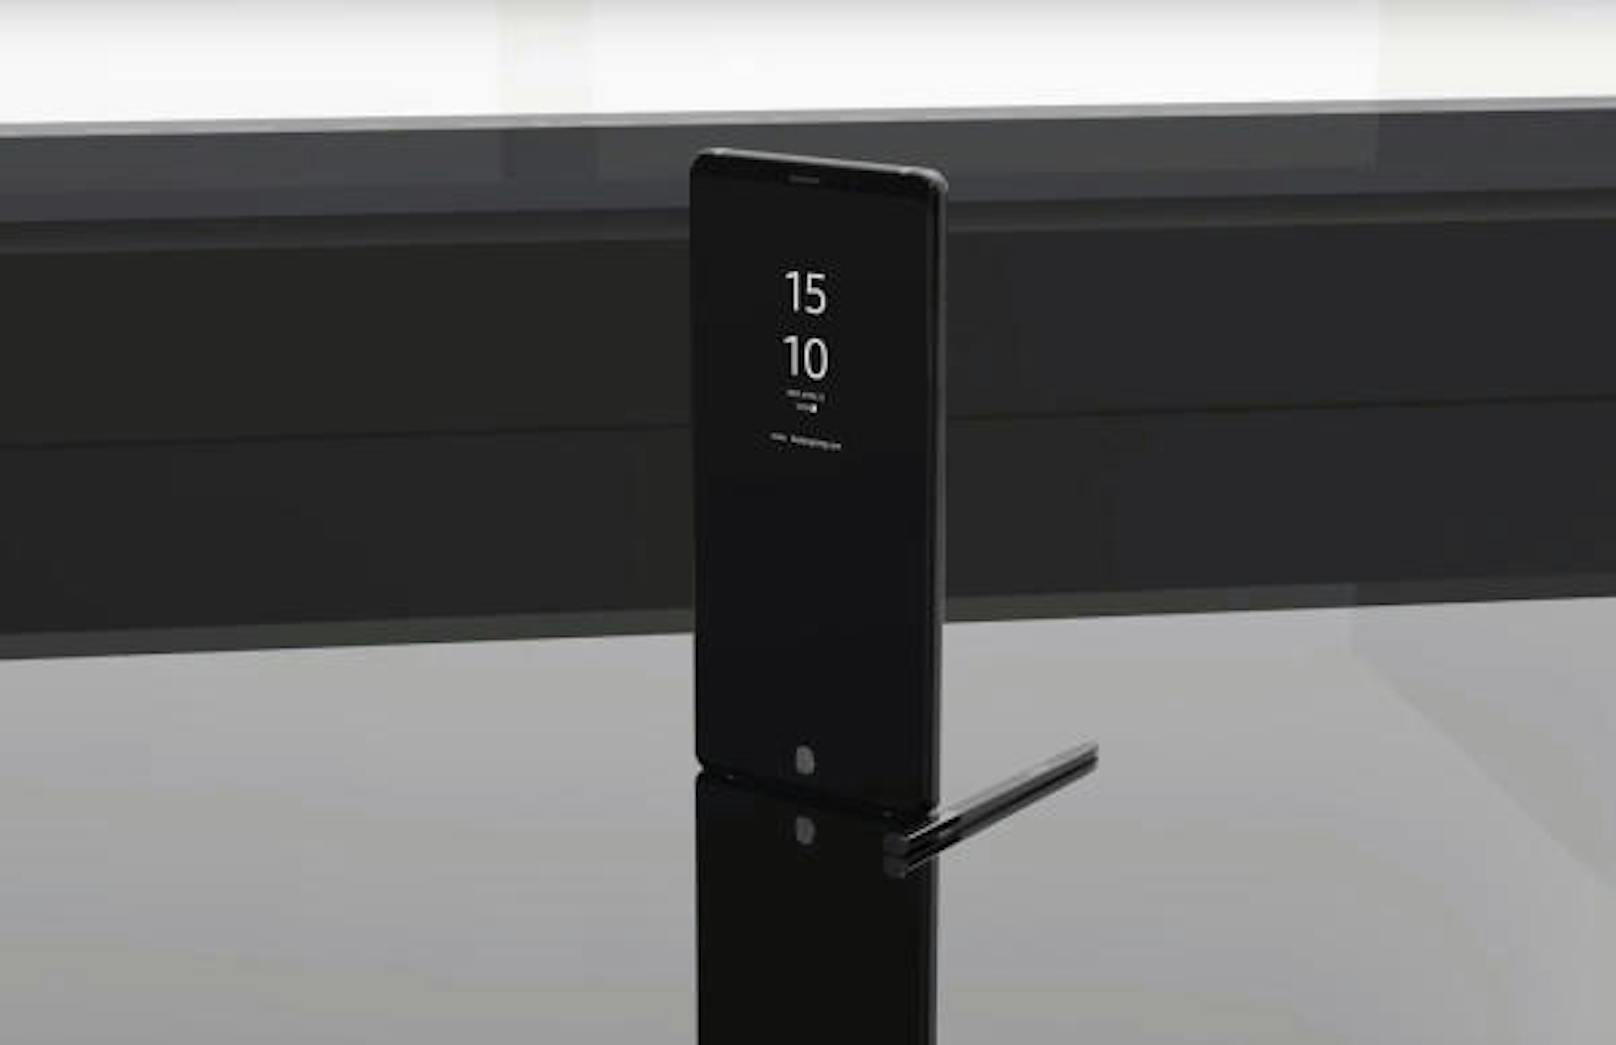 Das Galaxy Note 8 von Samsung erhält wohl bald einen Nachfolger. Dieser Entwurf von einem amerikanischen Design-Team soll zeigen, wie das neue Gerät aussehen könnte.